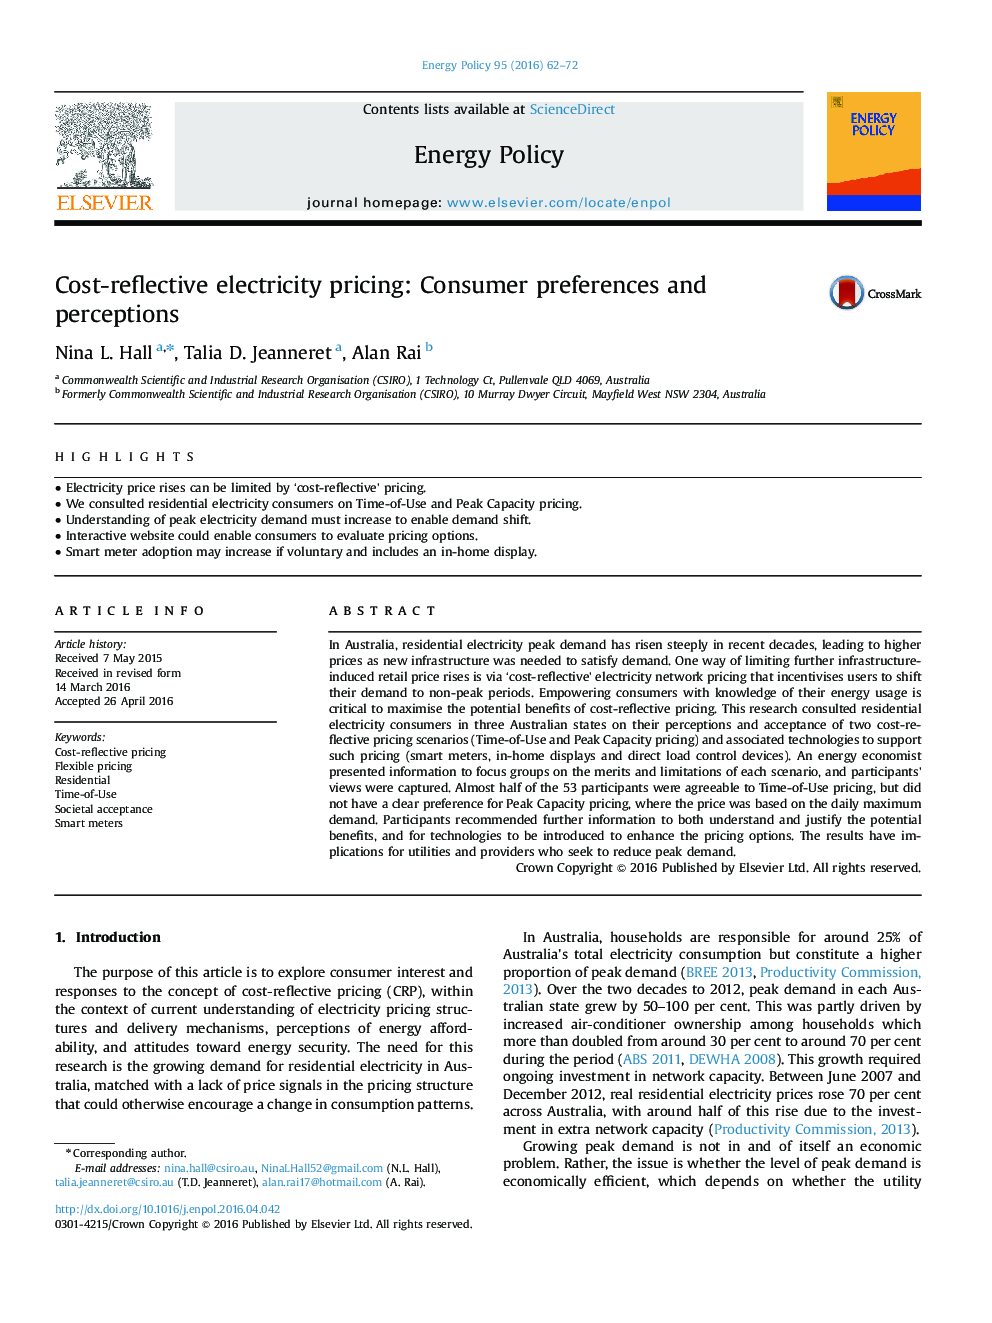 قیمت برق بازتابنده قیمت: تنظیمات و ادراکات مصرف کننده 